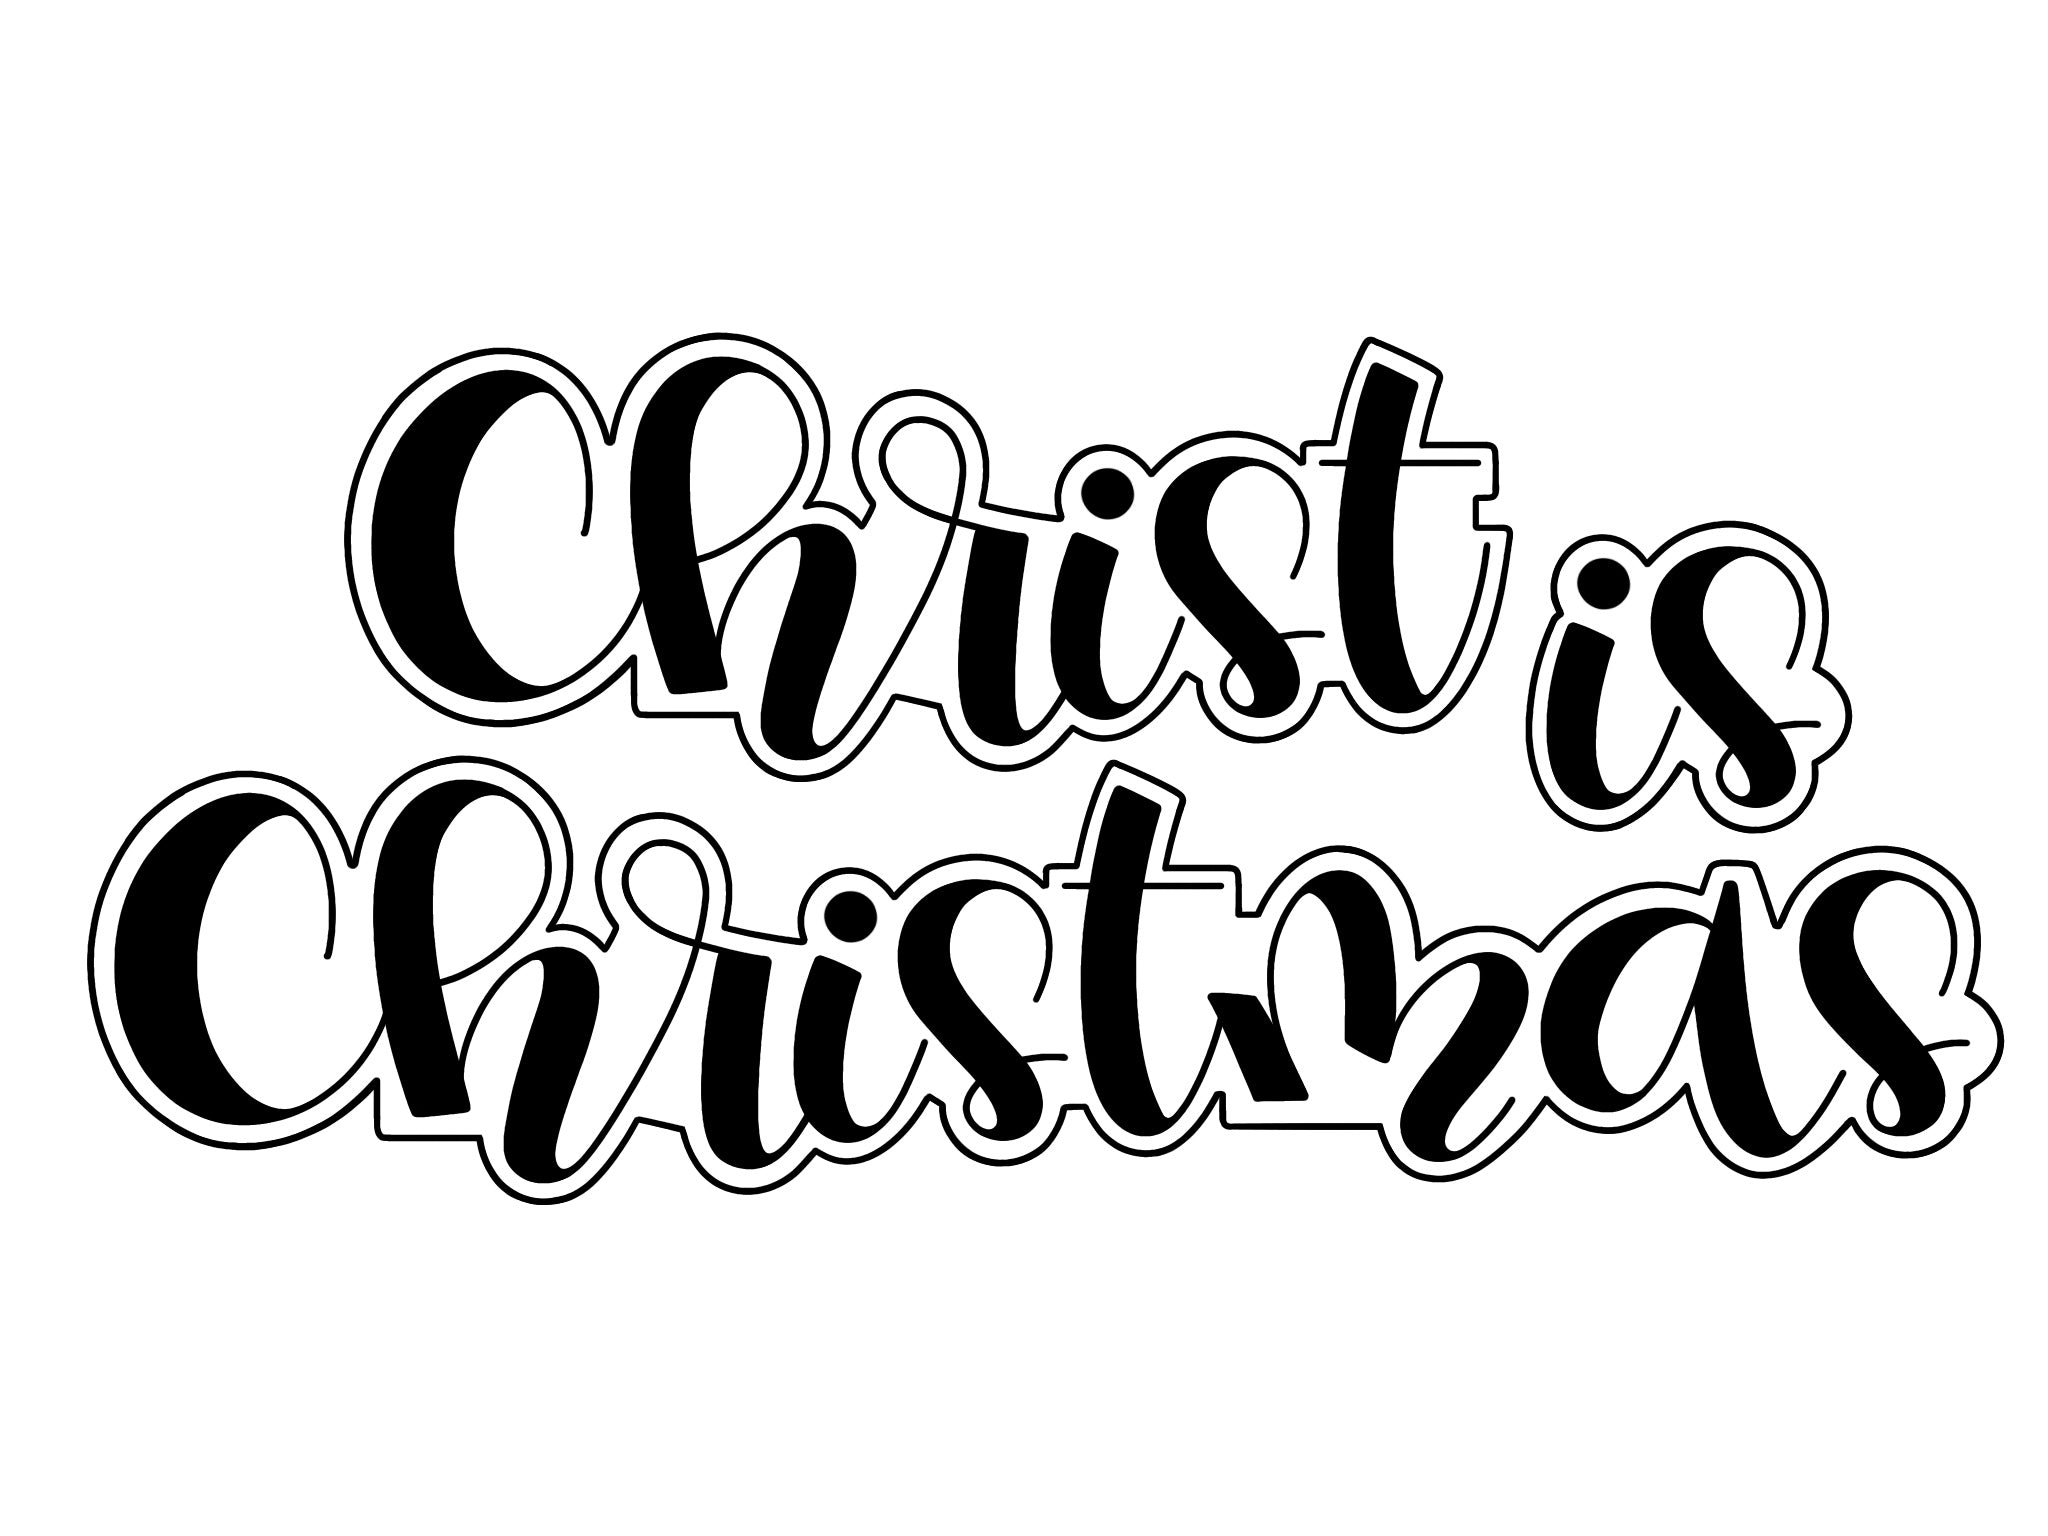 Christ is Christmas